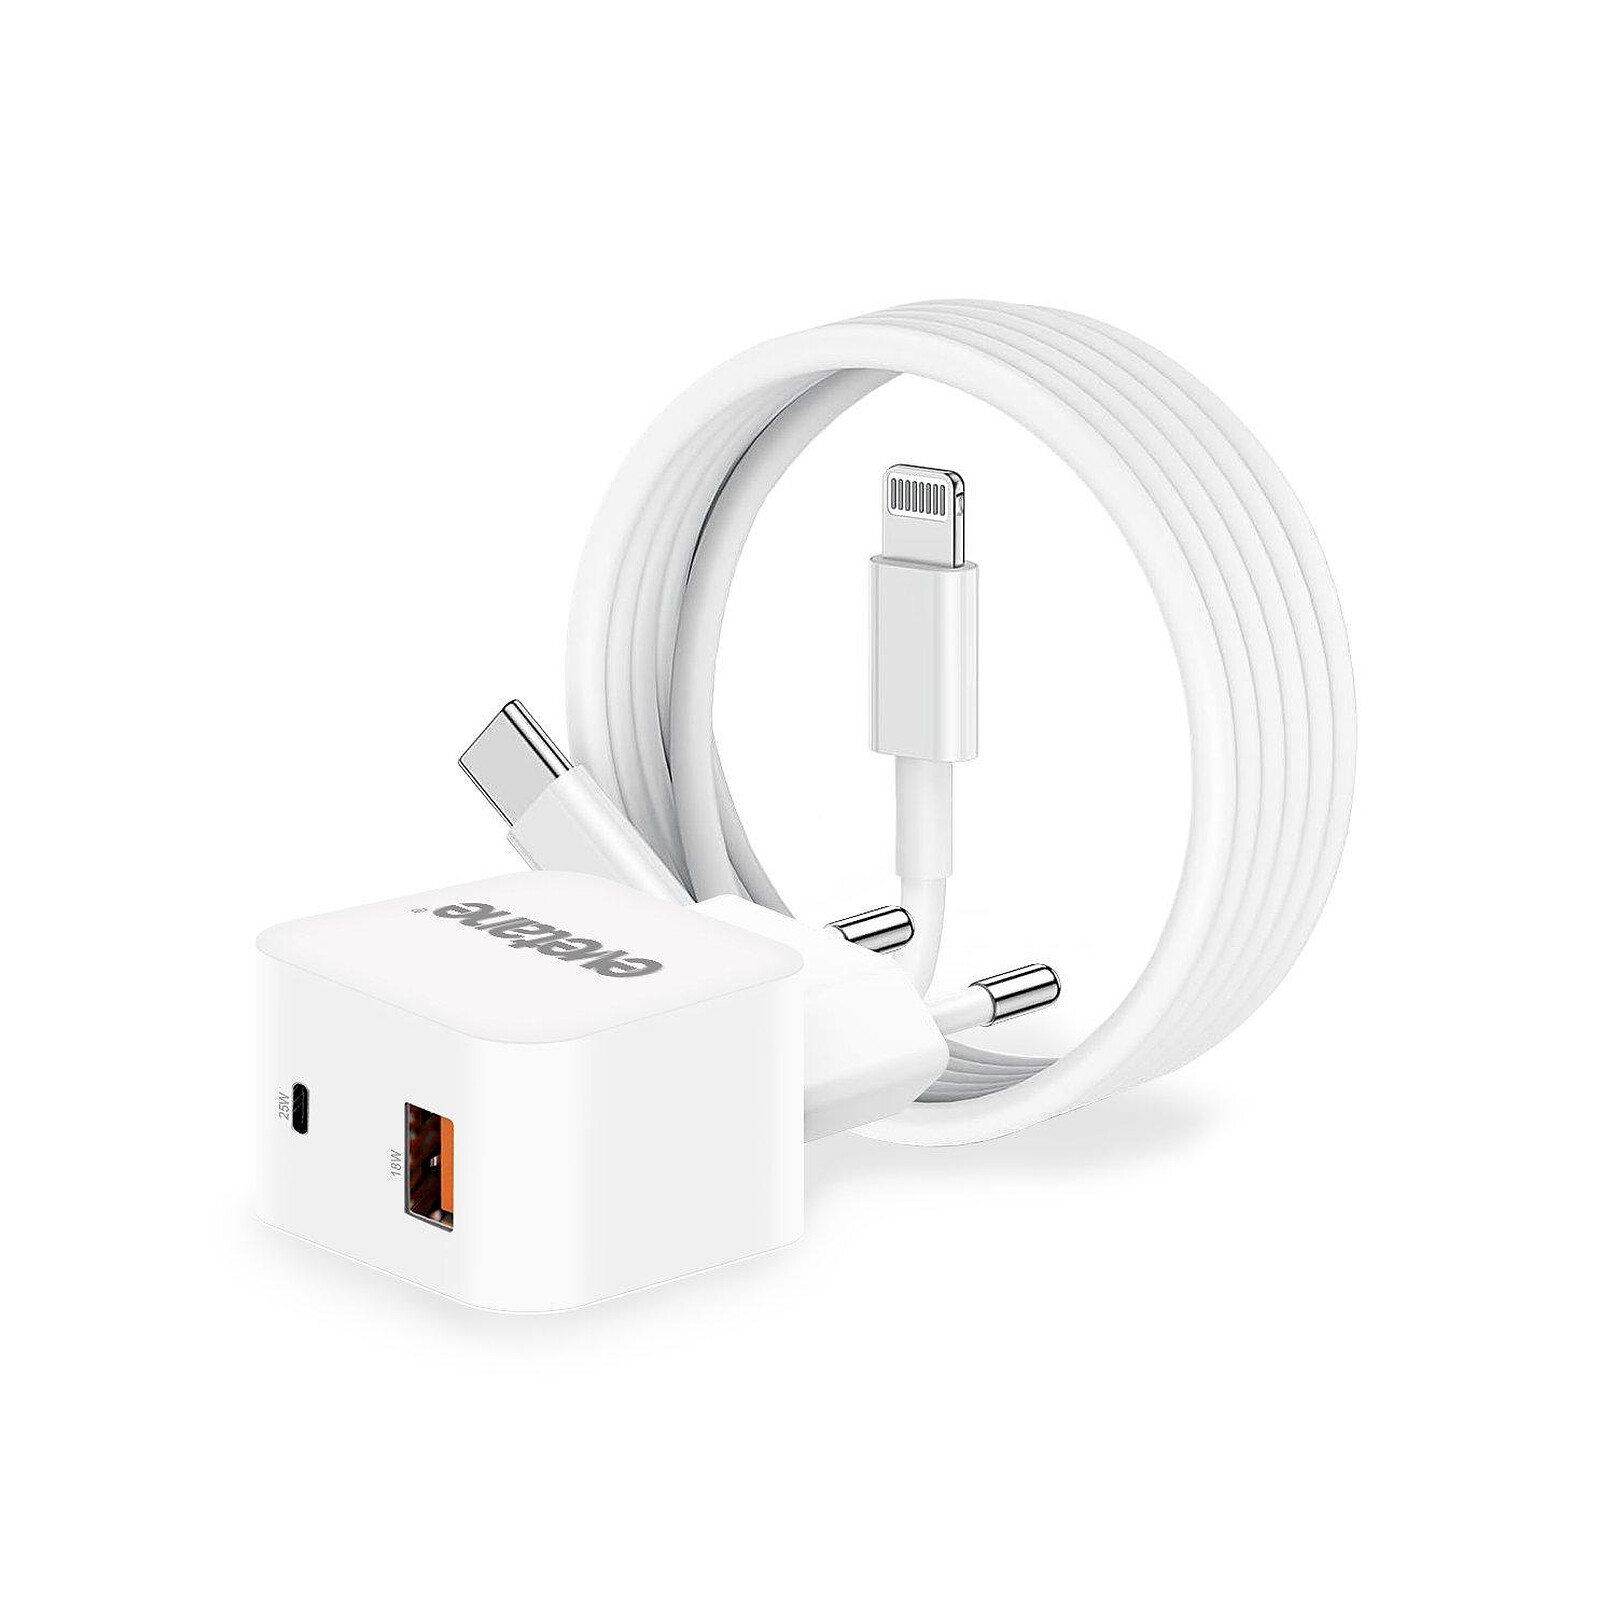 Evetane Chargeur blanc pour iPhone Ultra-rapide 25W USB-C + Câble 2M USB C/Lightning  (MFi) - Chargeur téléphone - LDLC